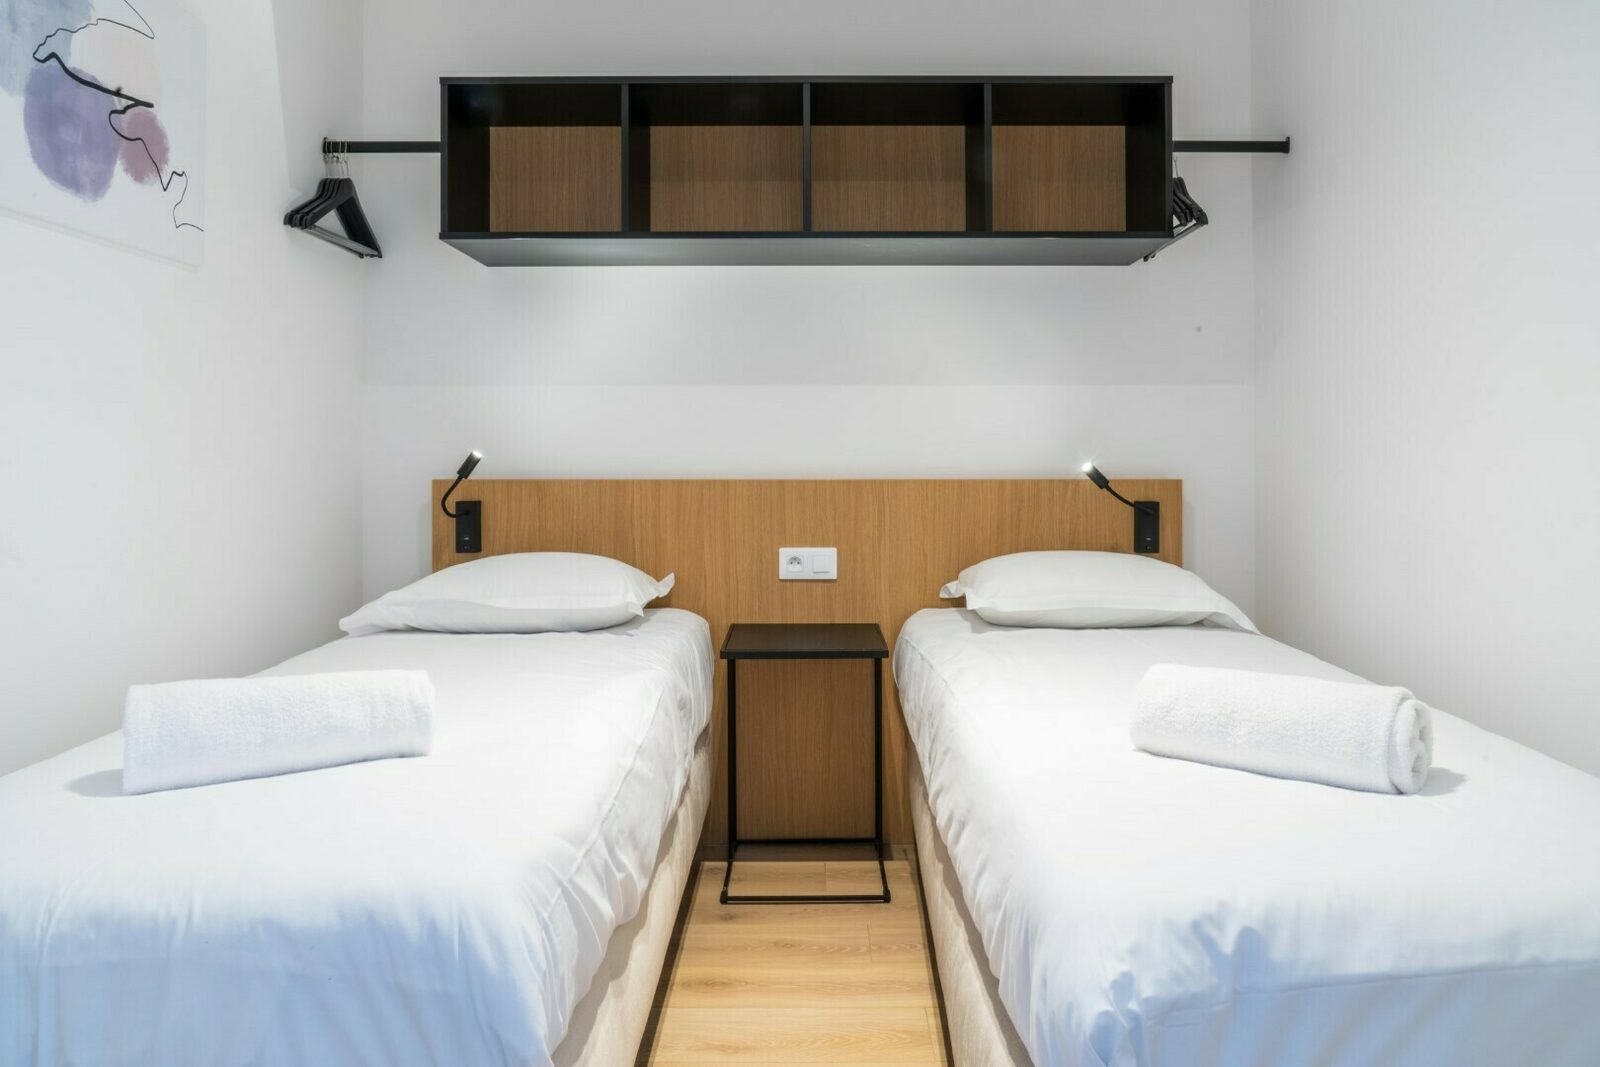 [Premium] Appartement met 1 slaapkamer dubbel bed, 2 enkele bedden & stapelbed